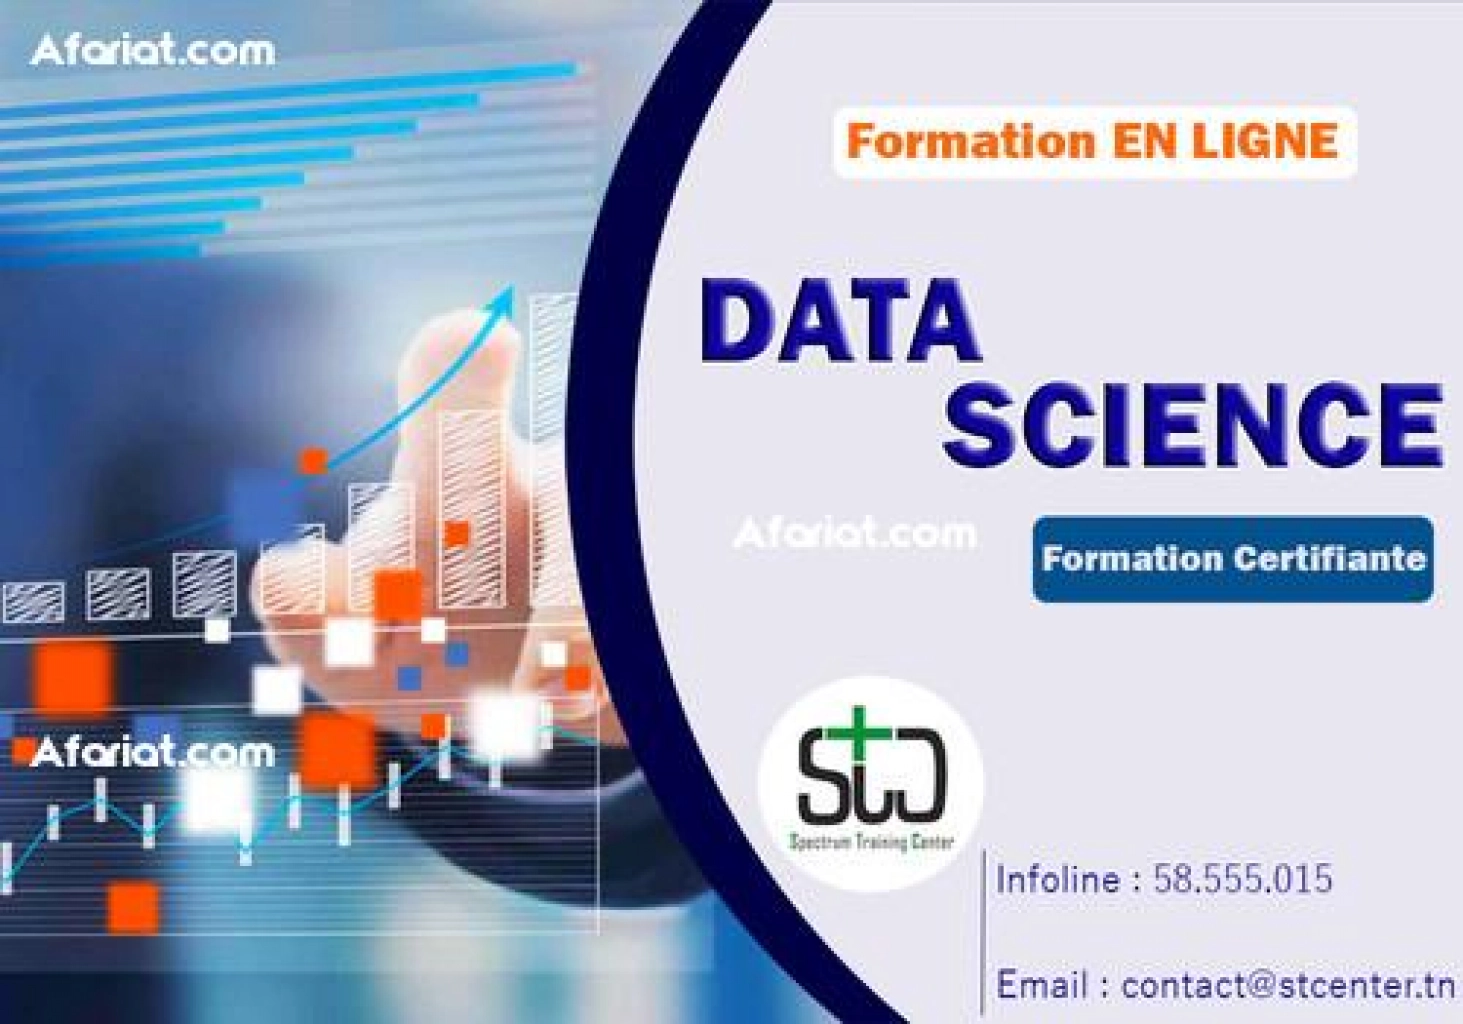 Formation Data Science En LIGNE